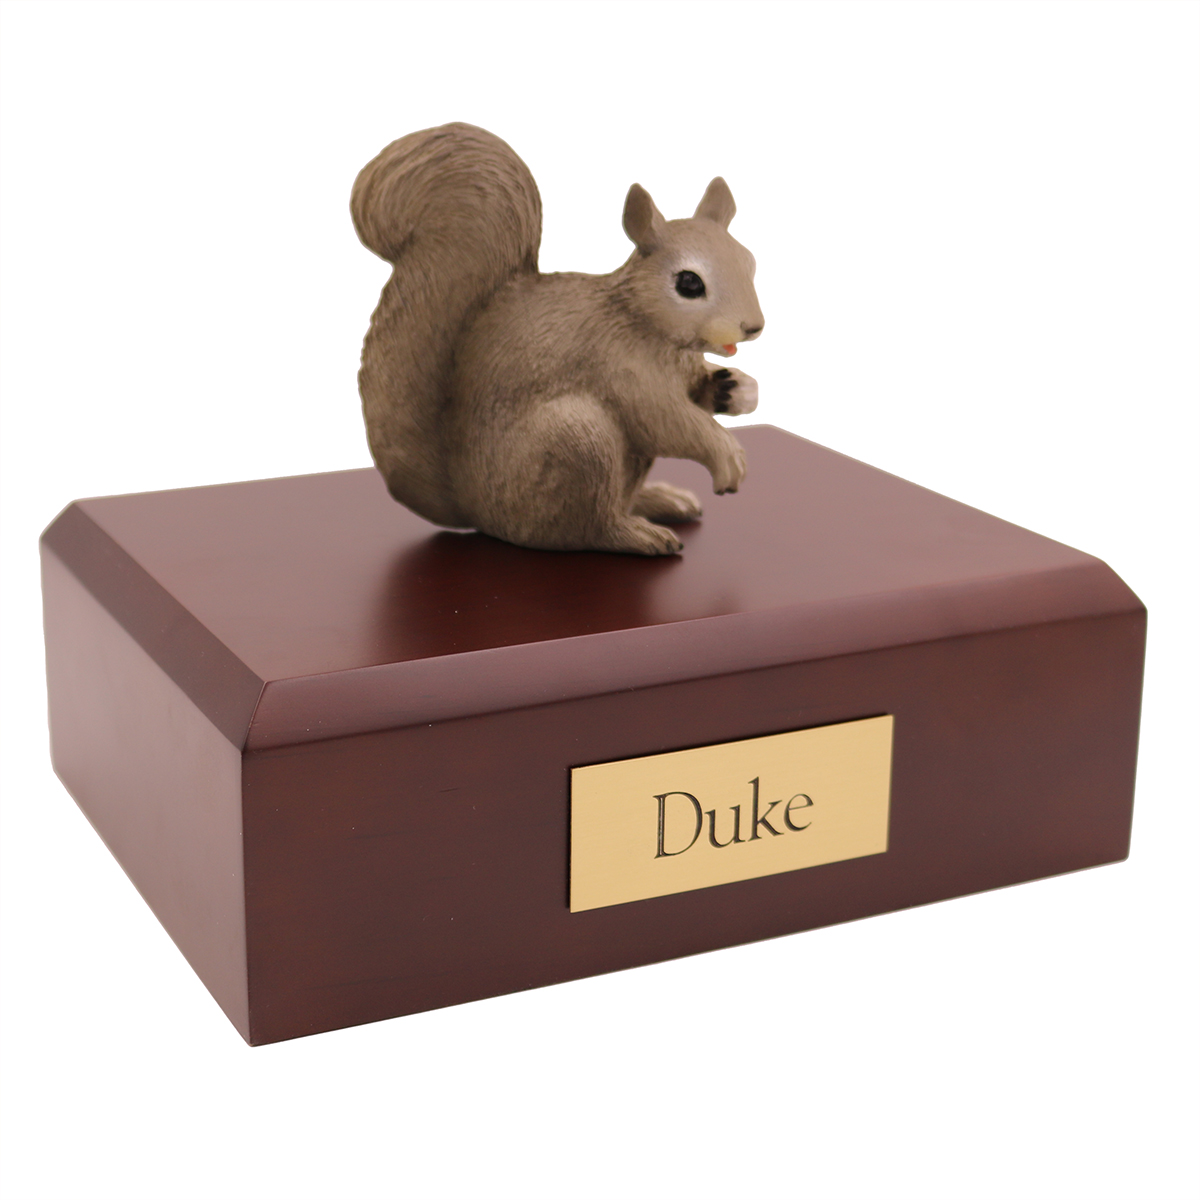 Squirrel Gray - Figurine Urn